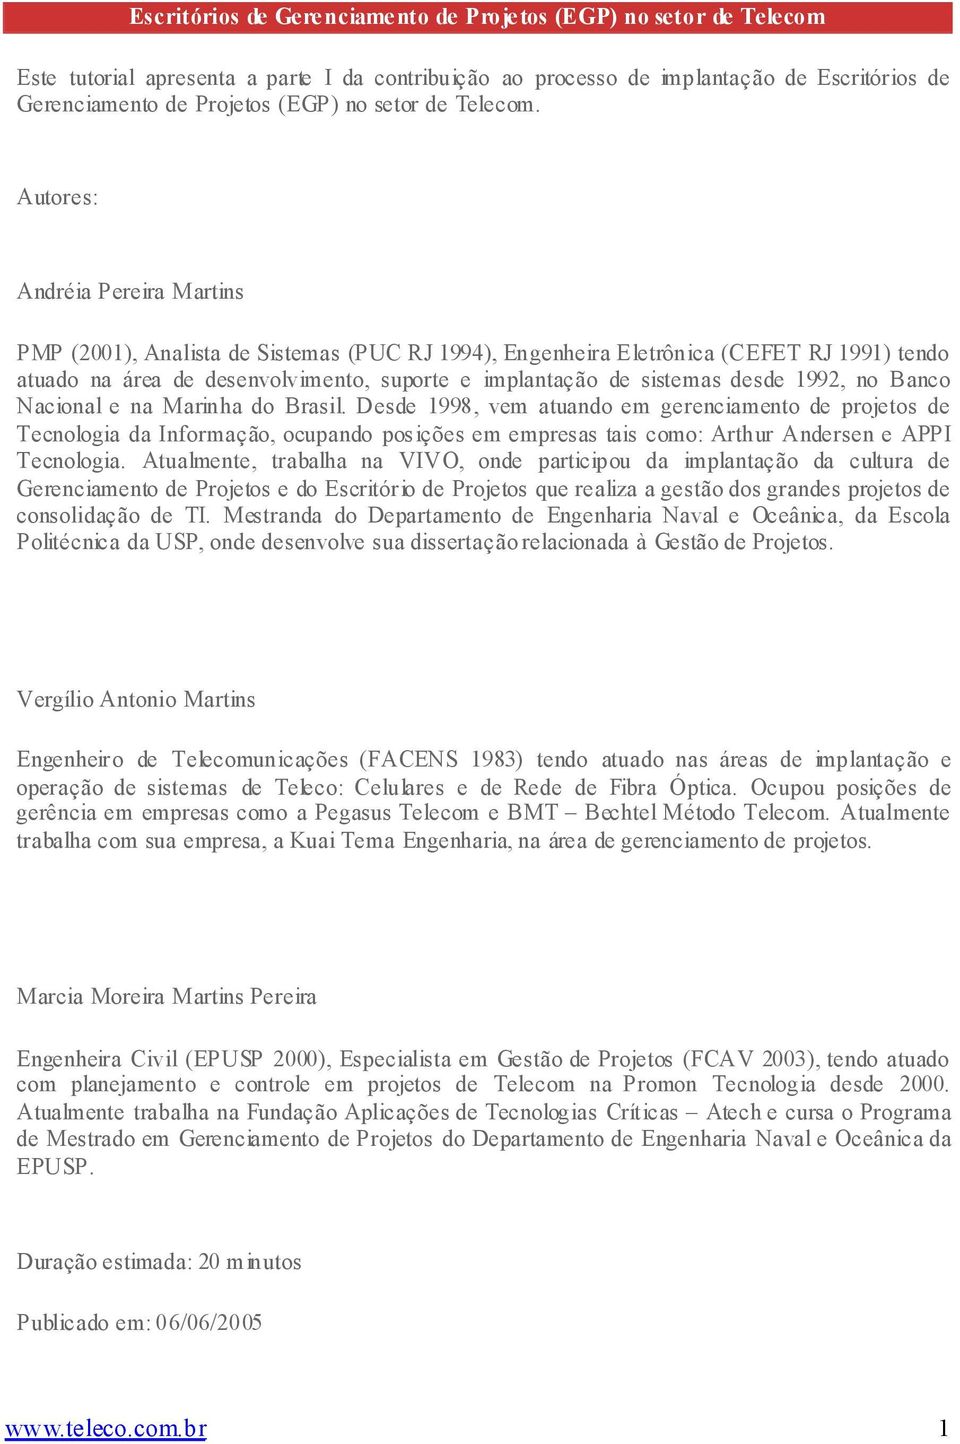 Autores: Andréia Pereira Martins PMP (2001), Analista de Sistemas (PUC RJ 1994), Engenheira Eletrônica (CEFET RJ 1991) tendo atuado na área de desenvolvimento, suporte e implantação de sistemas desde